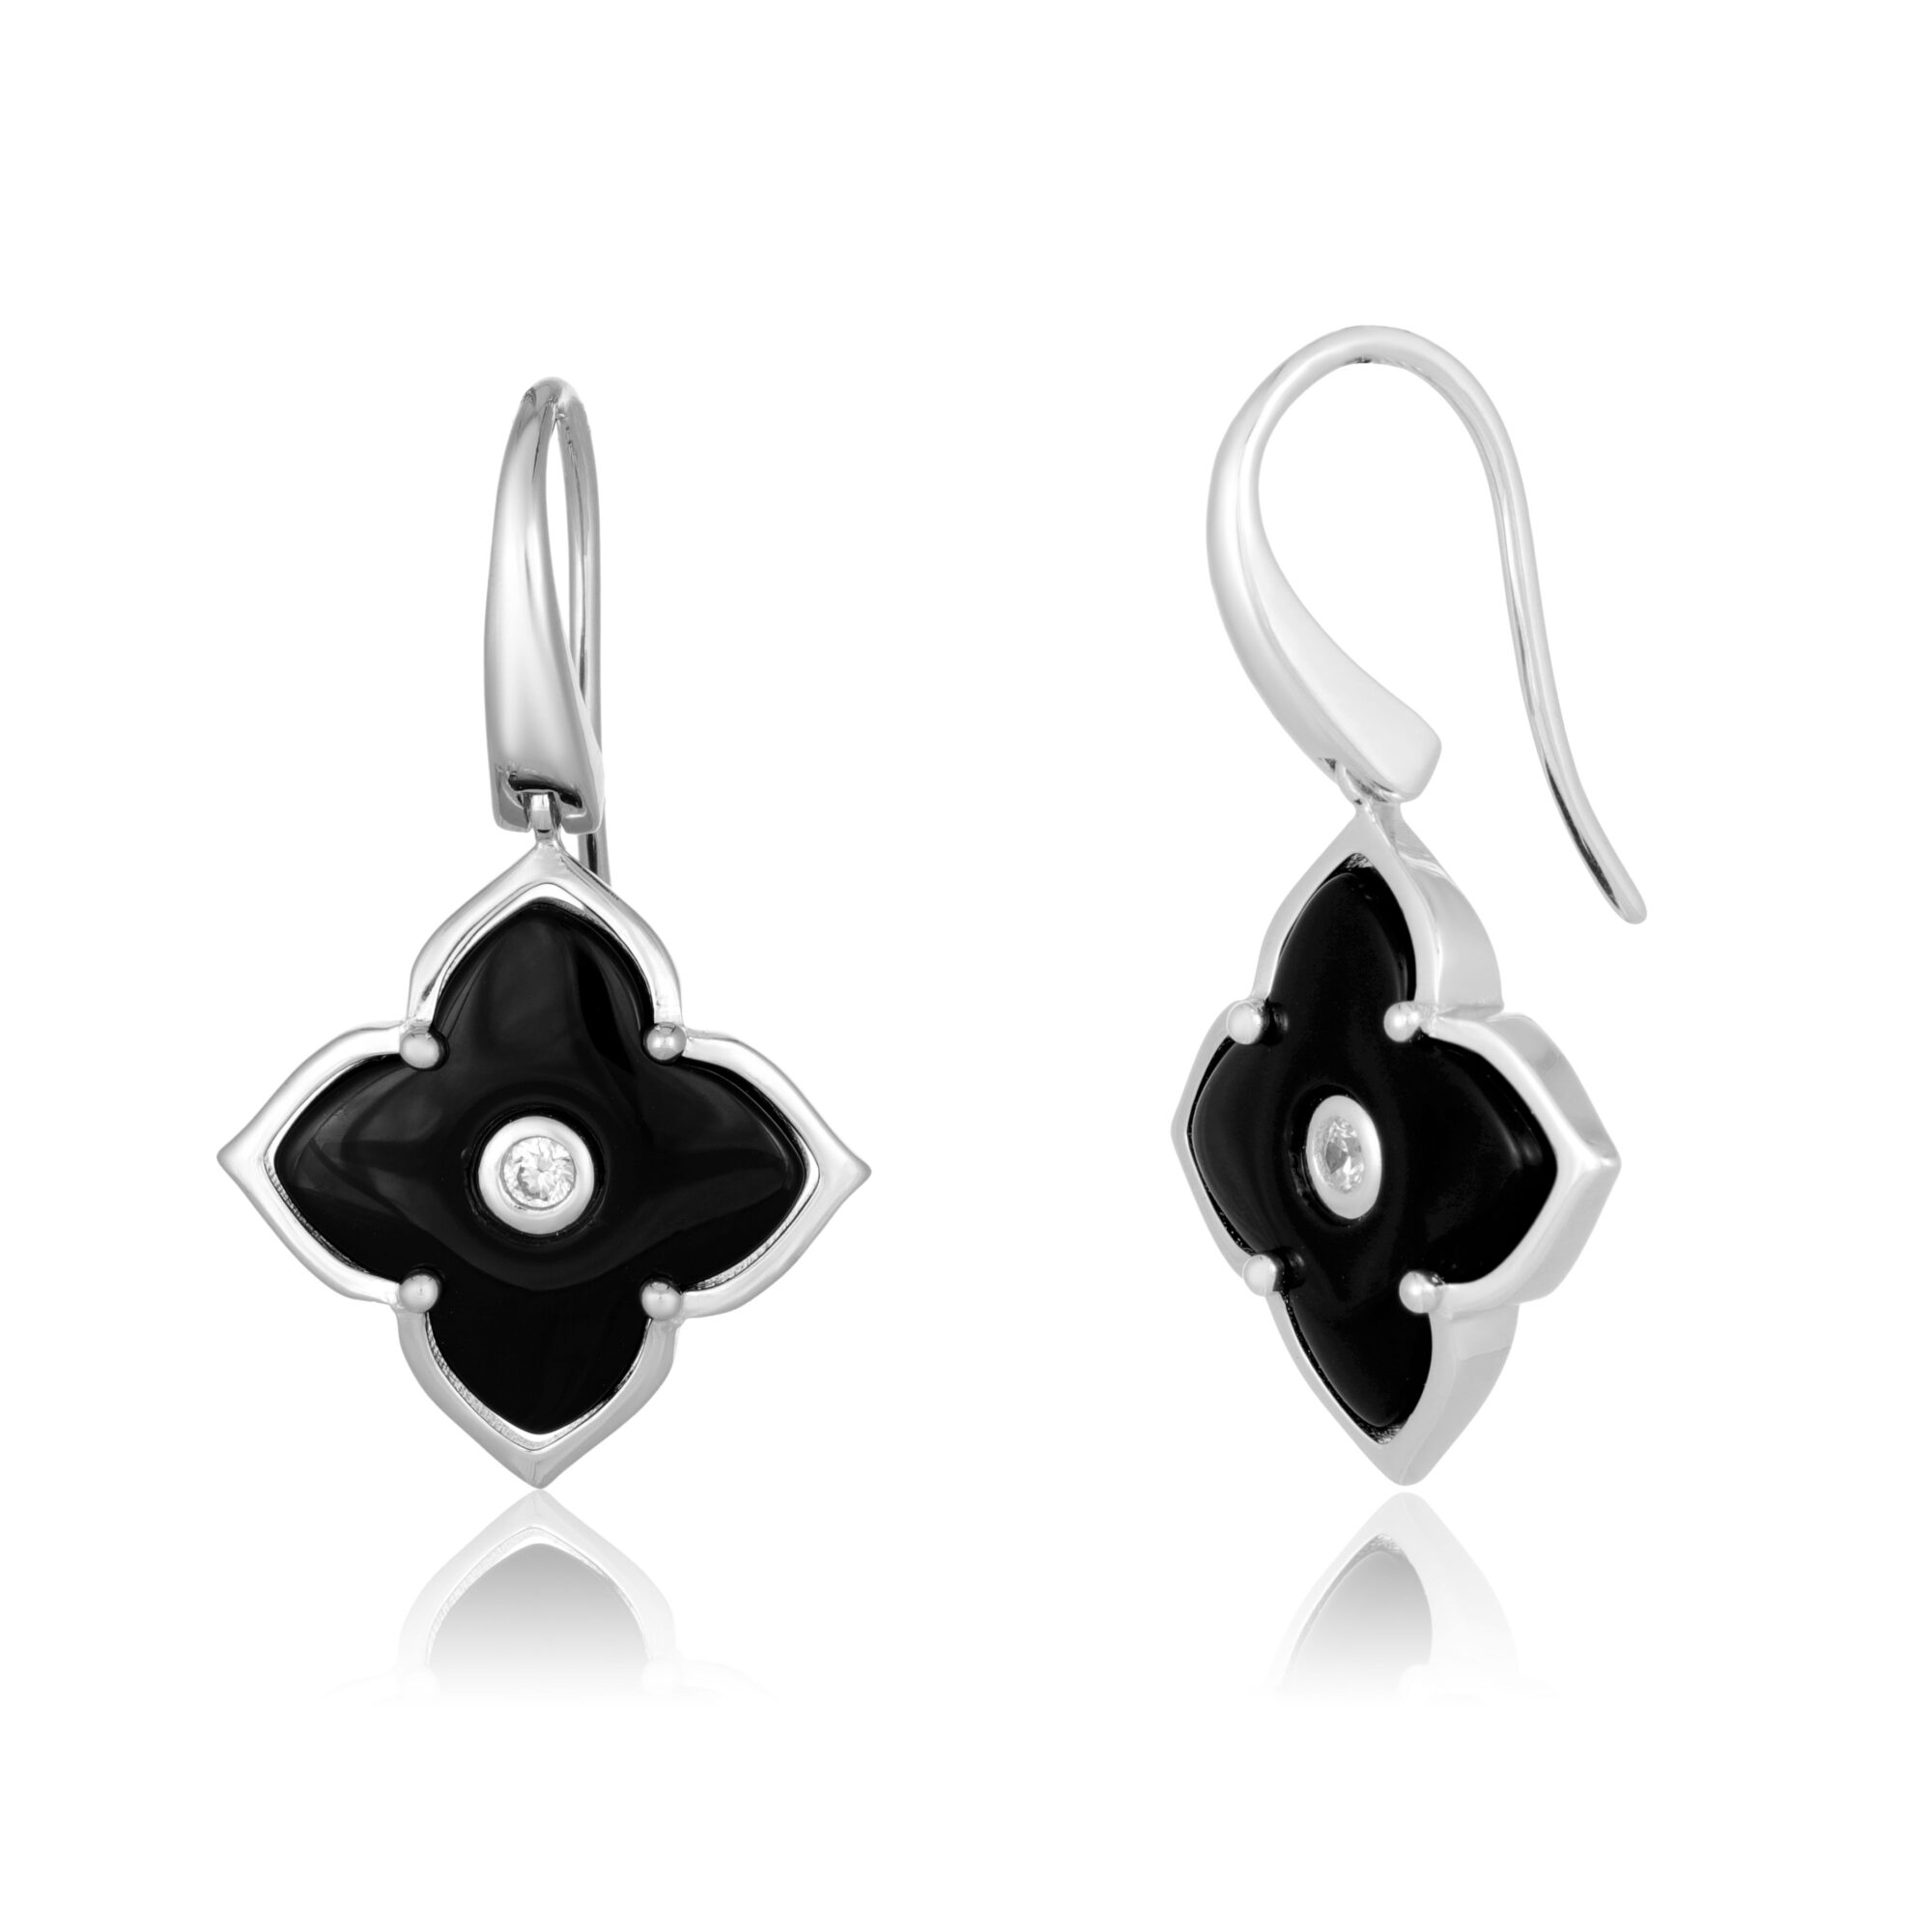 Lavari Jeweler Women's Black Onyx Flower Drop Dangle Earrings with Fishhooks, 925 Sterling Silver, 16 MM